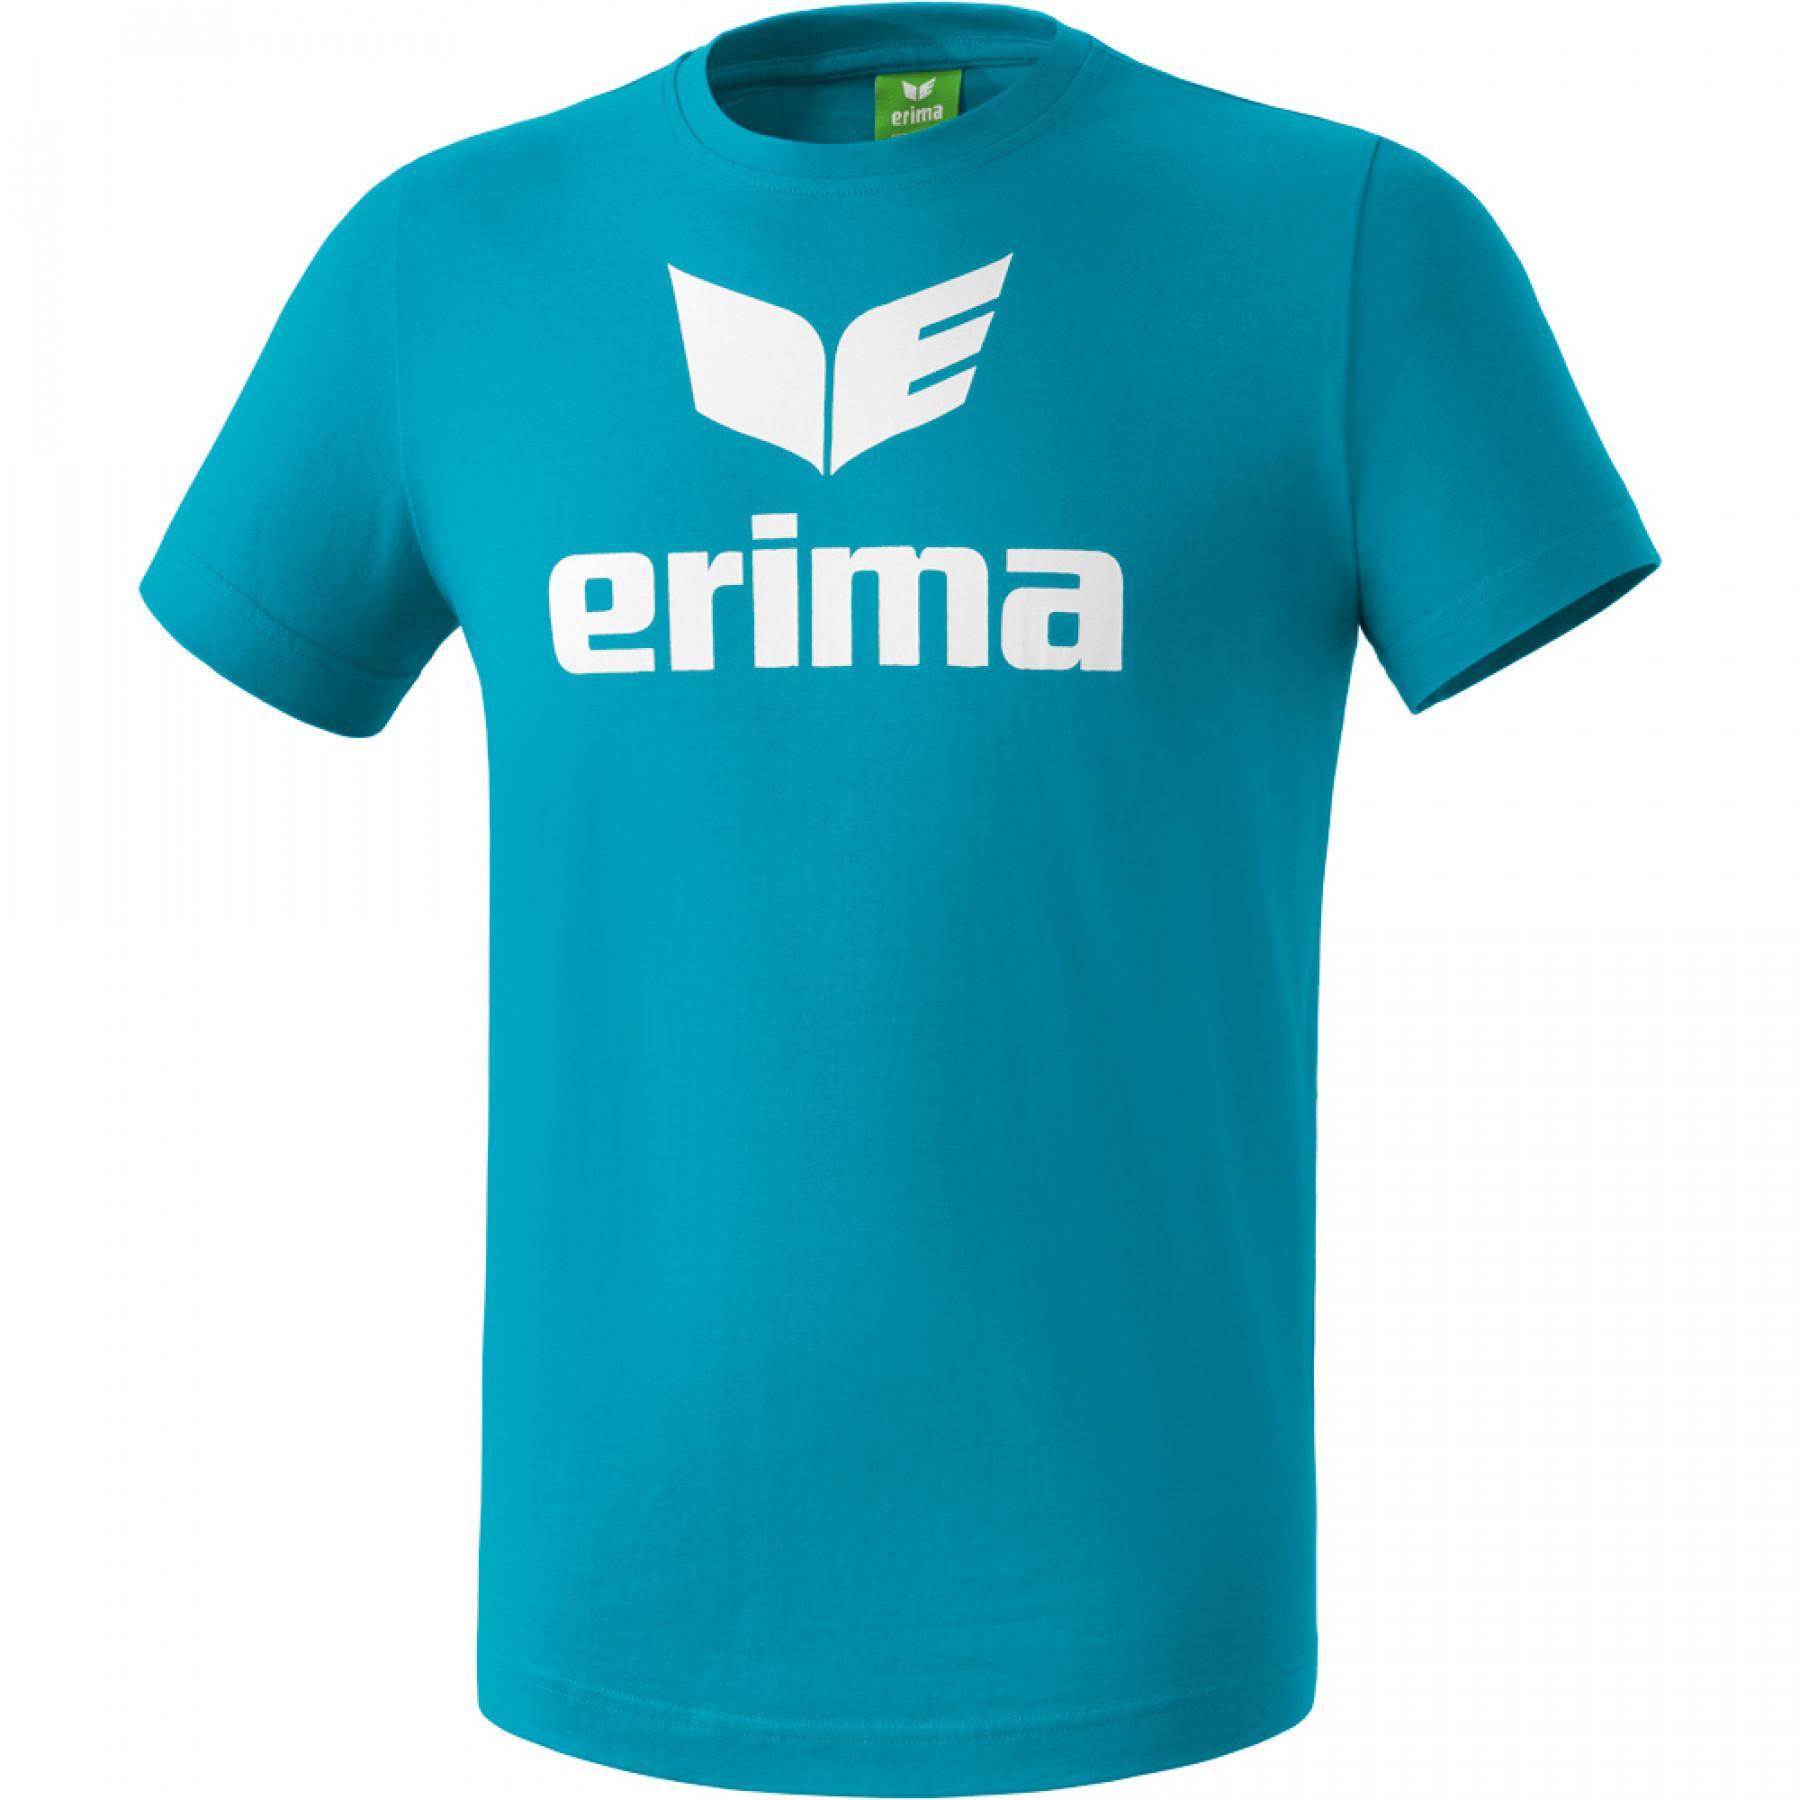 Camiseta niños Erima Promo